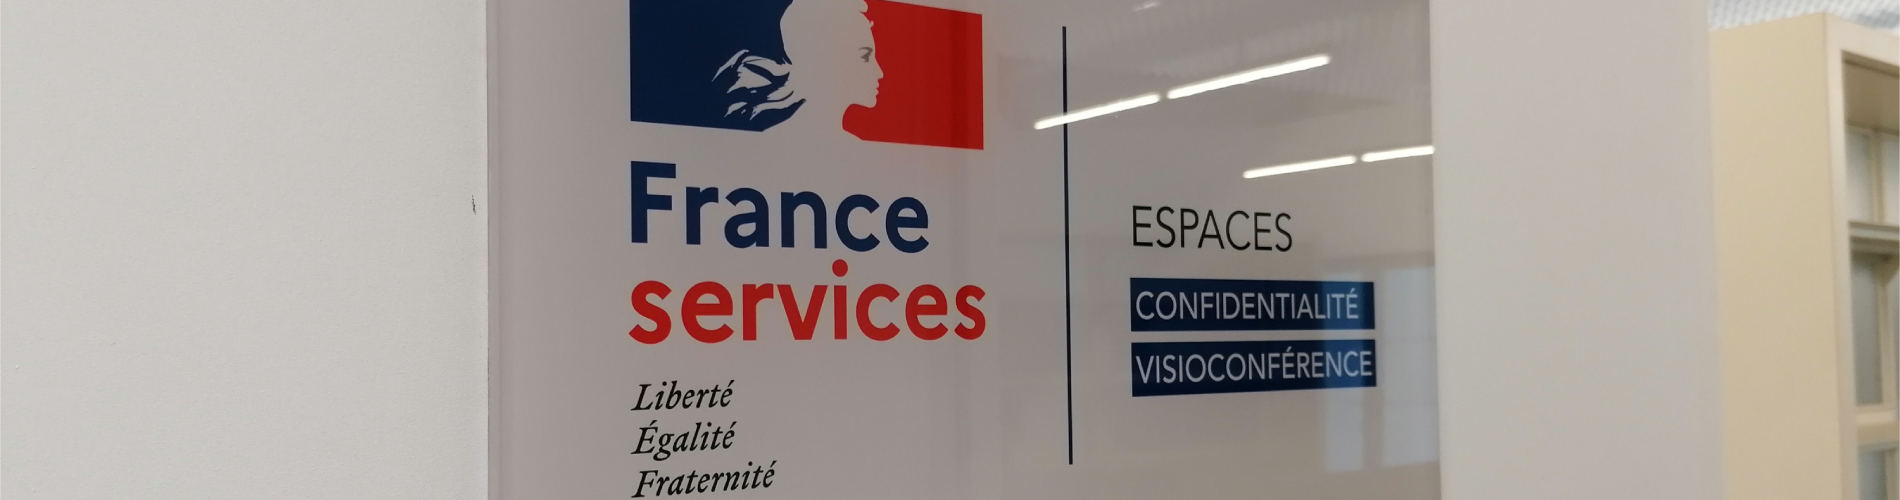 France Services à Onet-le-Château : Une qualité d’accueil et d’accompagnement félicitée